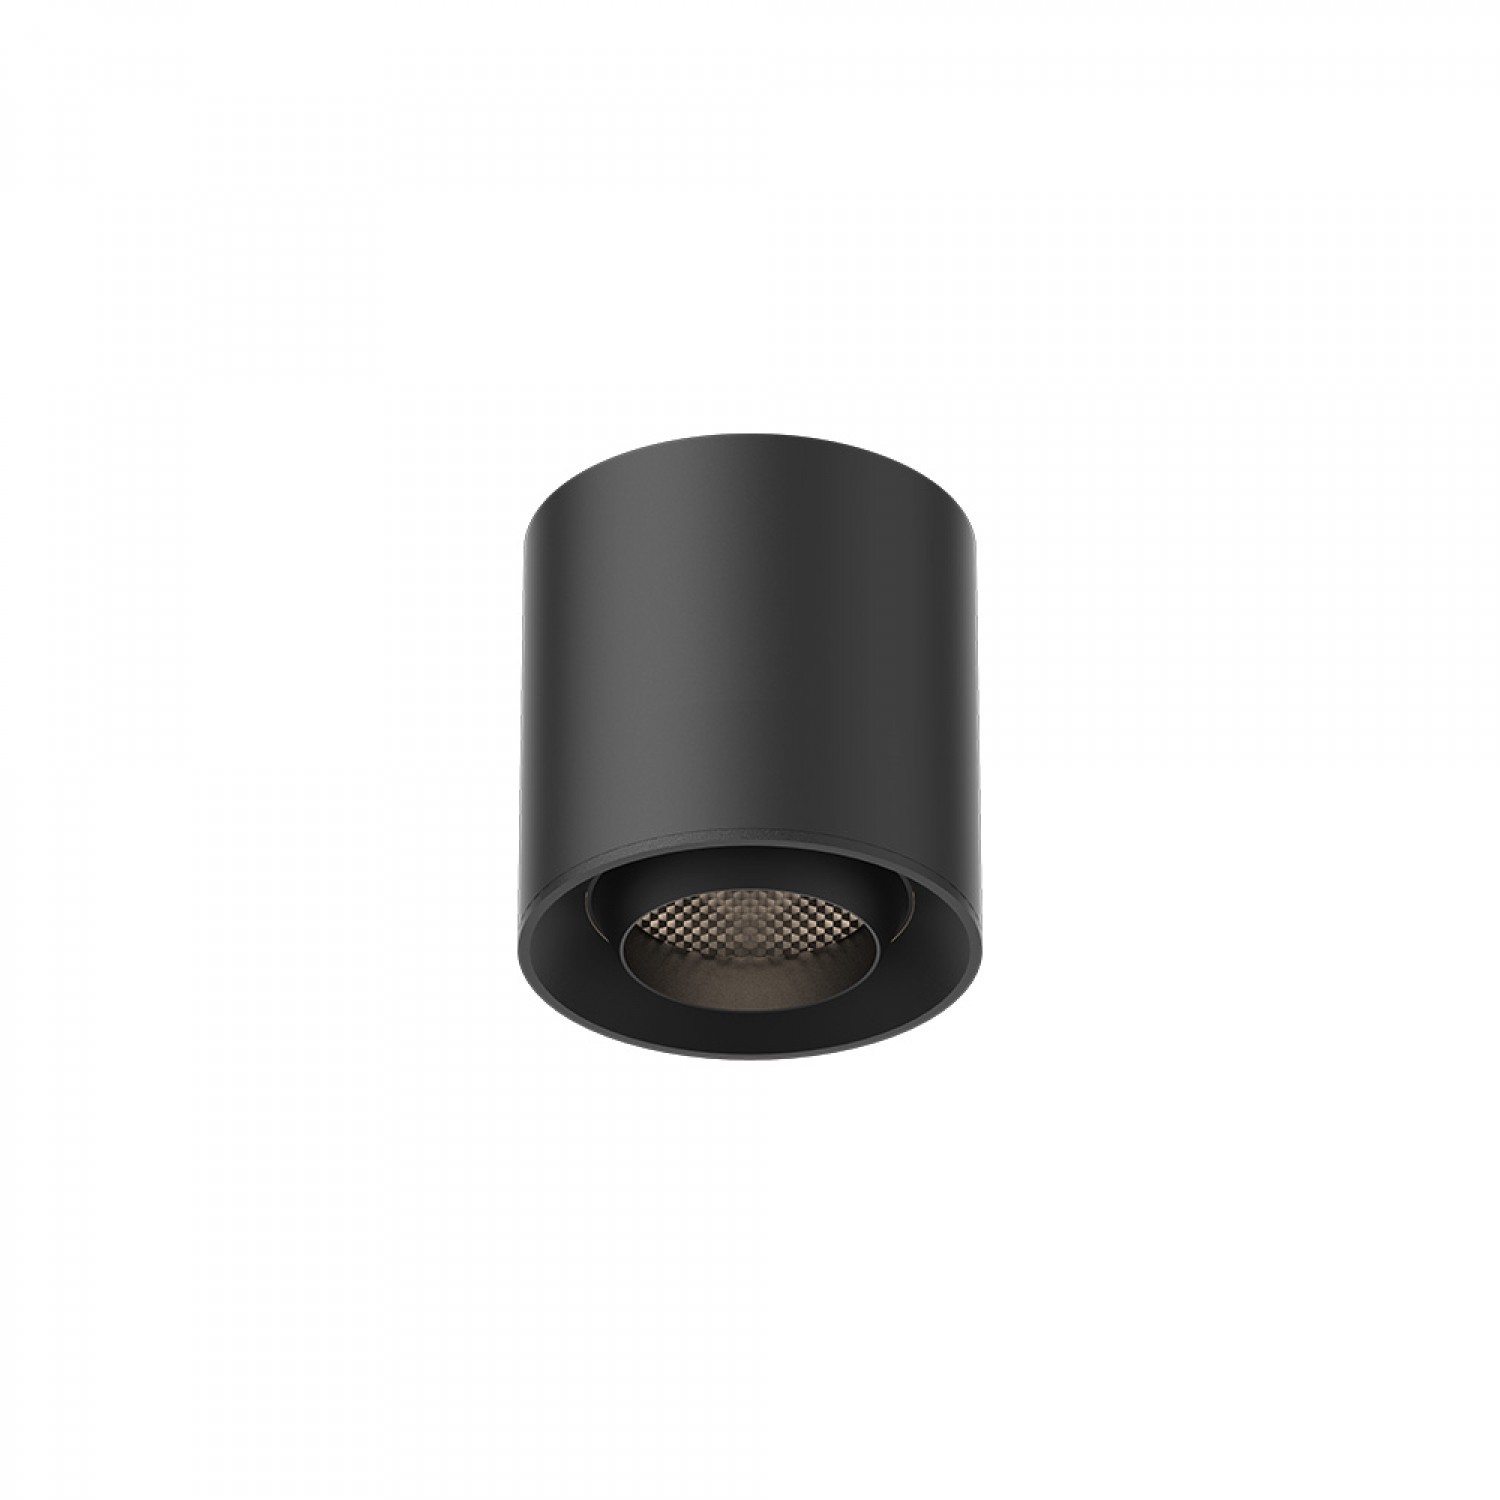 Φωτιστικό LED 6W 3000K για Ultra-Thin μαγνητική ράγα σε μαύρη απόχρωση D:7,5cmX7,5cm (T03501-BL)